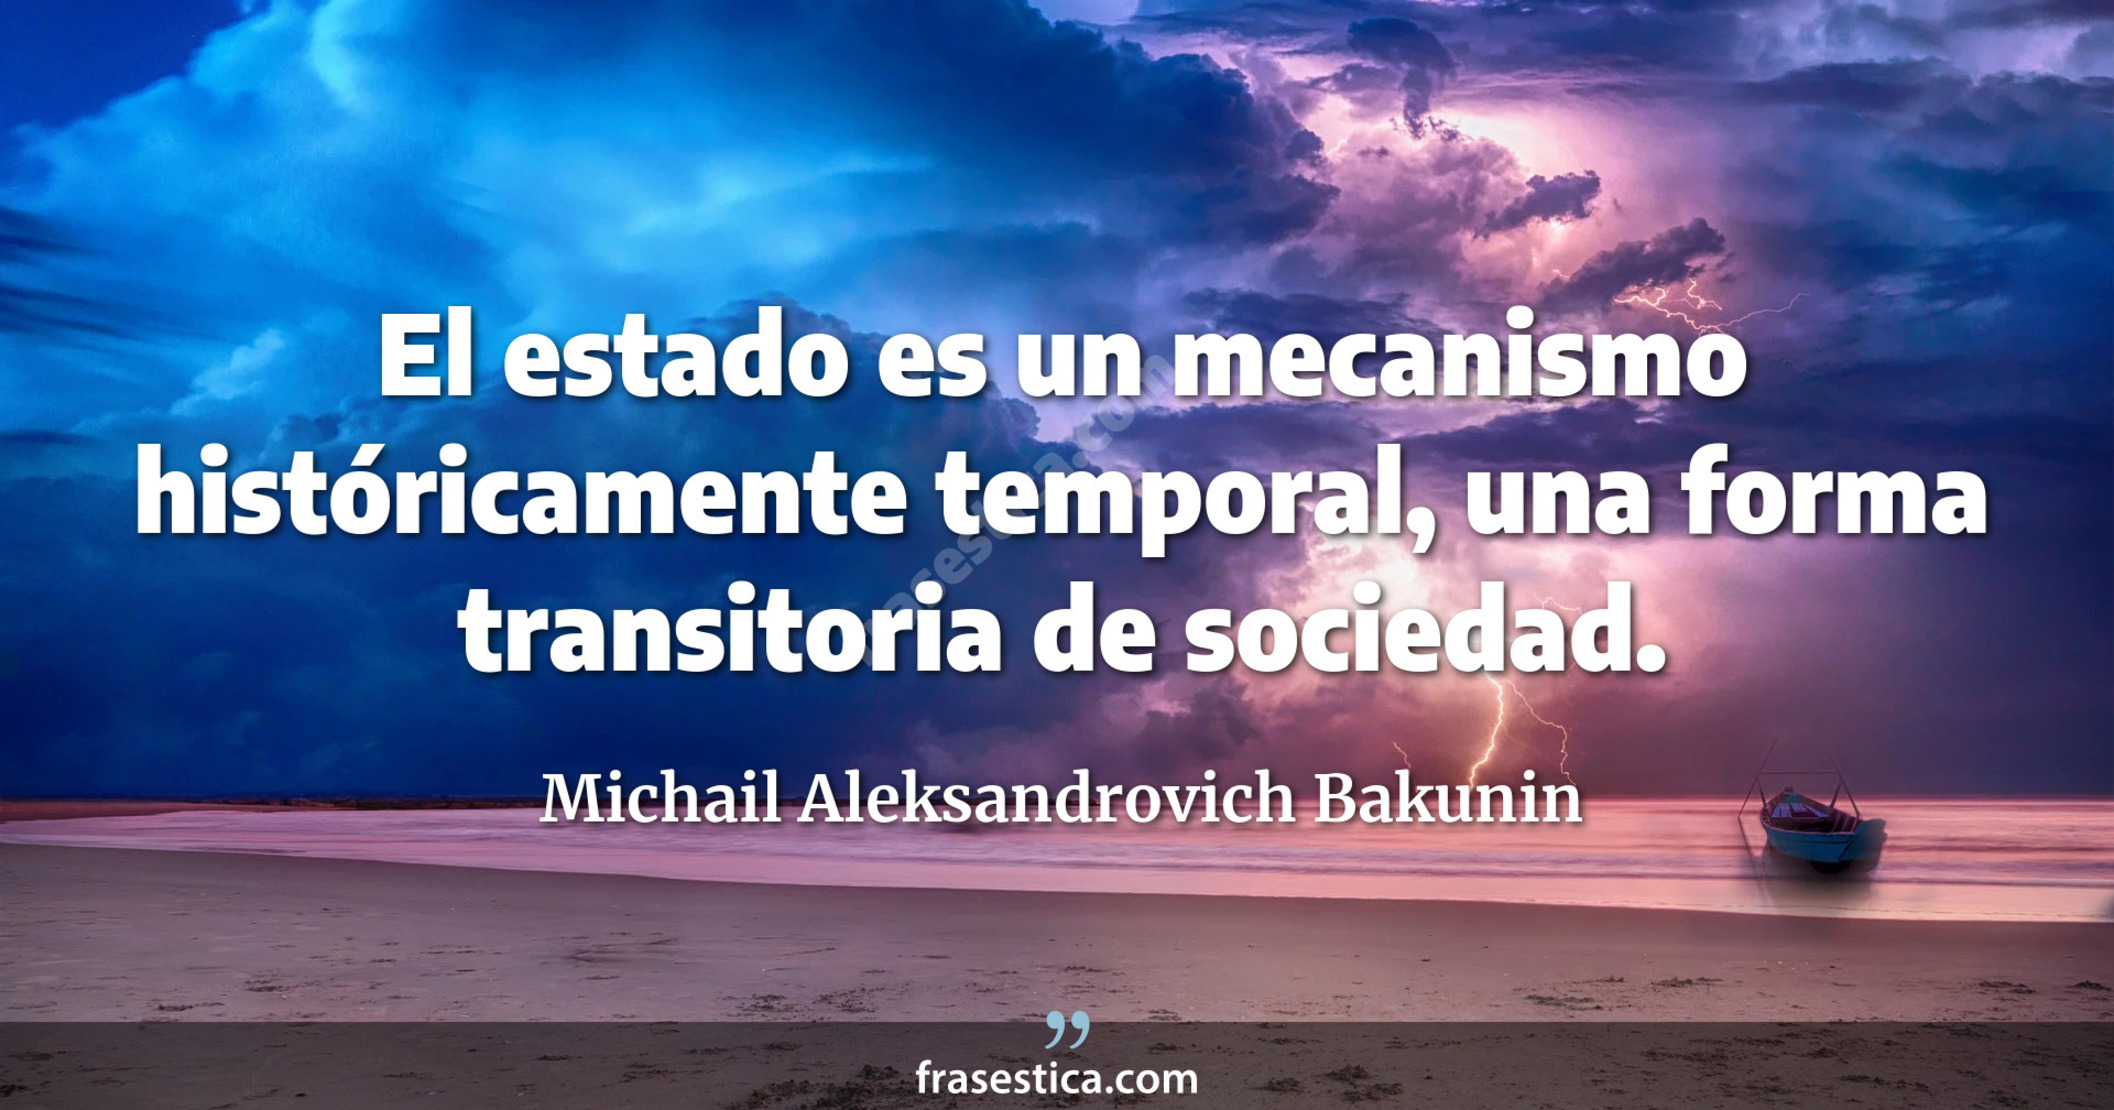 El estado es un mecanismo históricamente temporal, una forma transitoria de sociedad. - Michail Aleksandrovich Bakunin